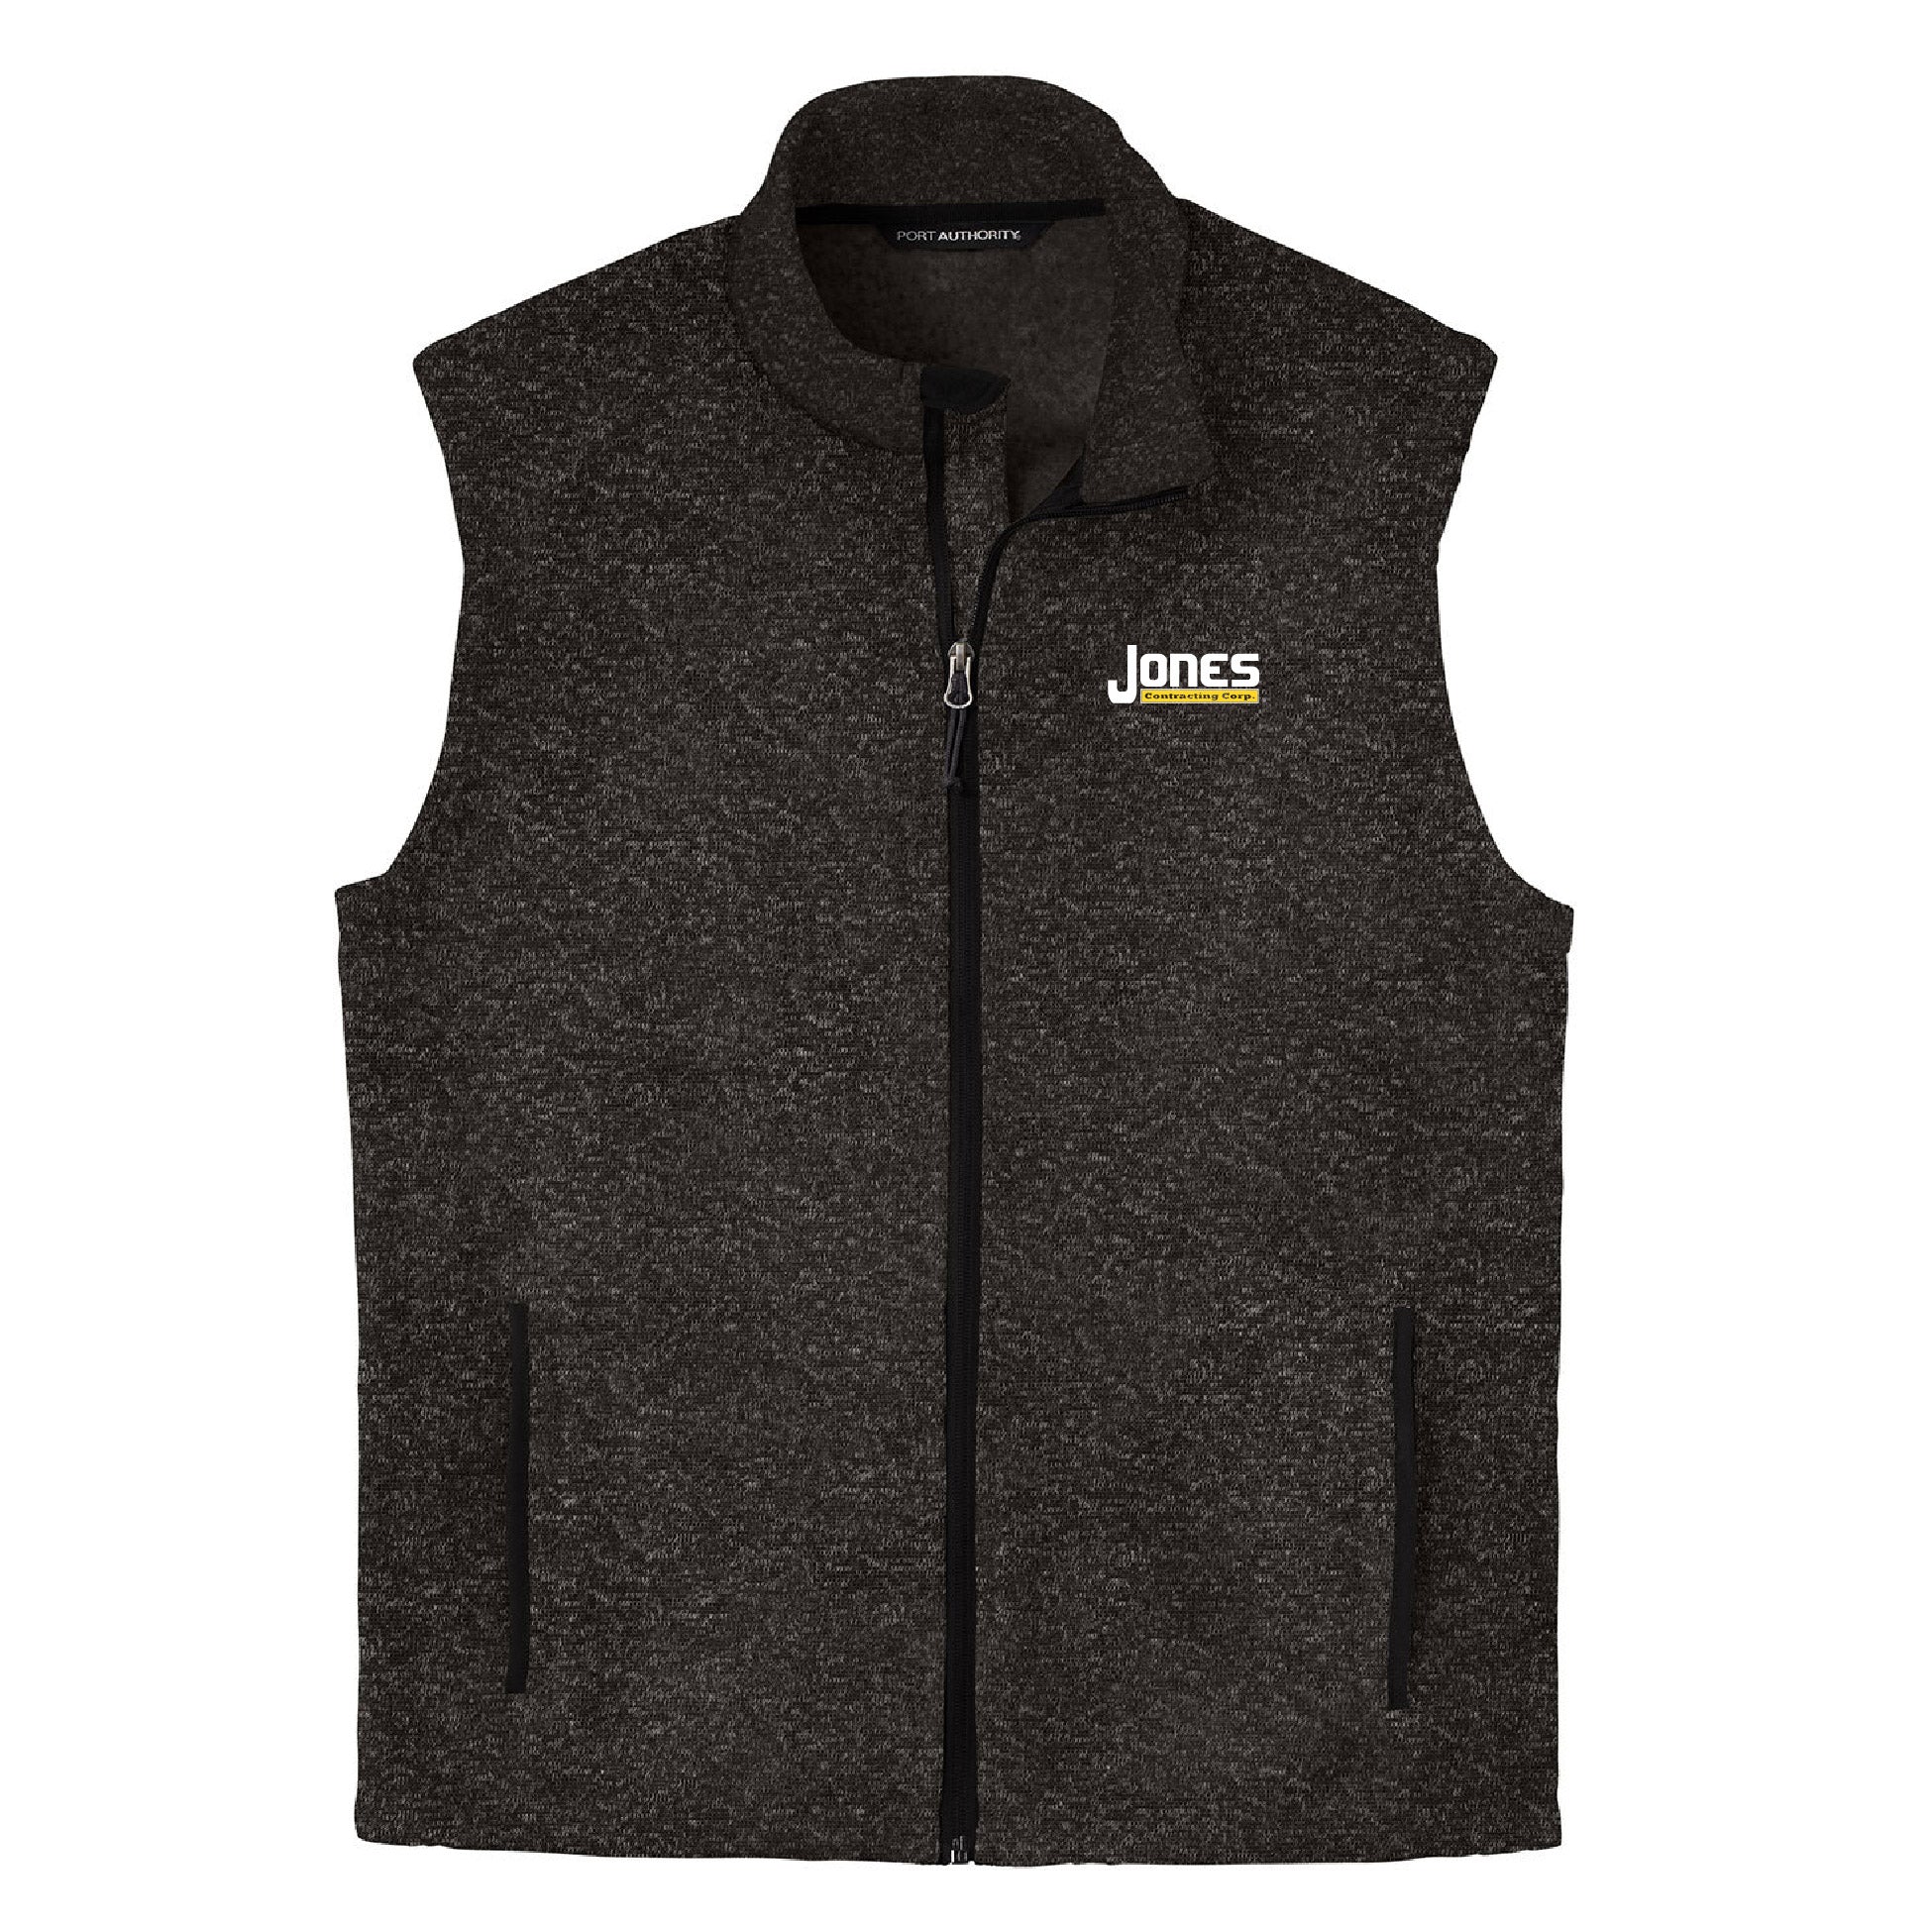 Jones Contracting Sweater Fleece Vest